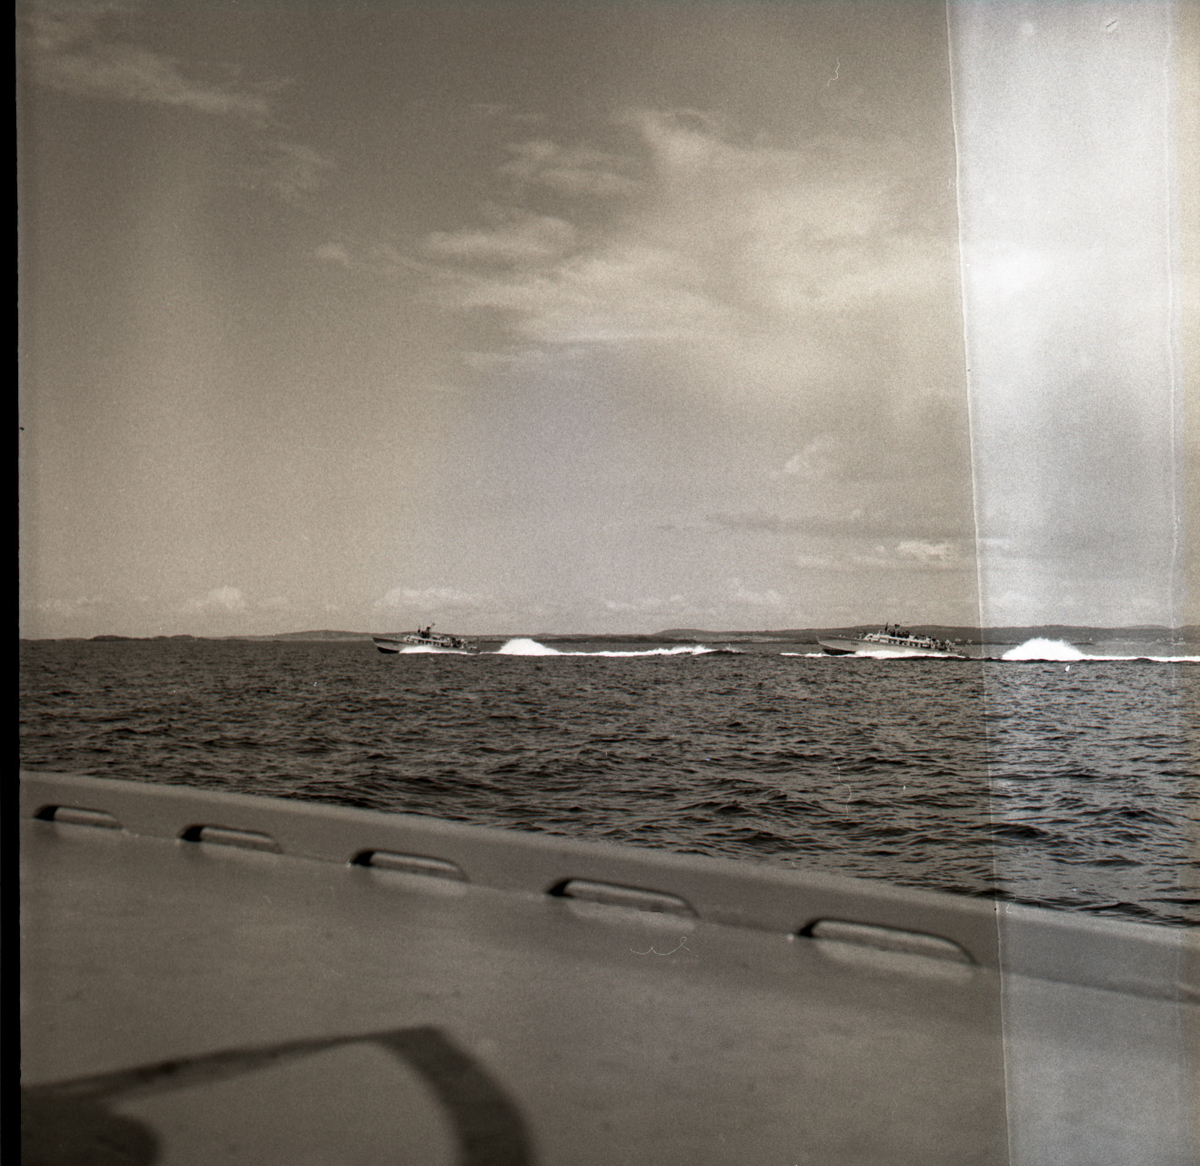 Samlefoto: Elco-klasse MTB-er gjennom Bandak-kanalen i juli 1953.
Full fart.